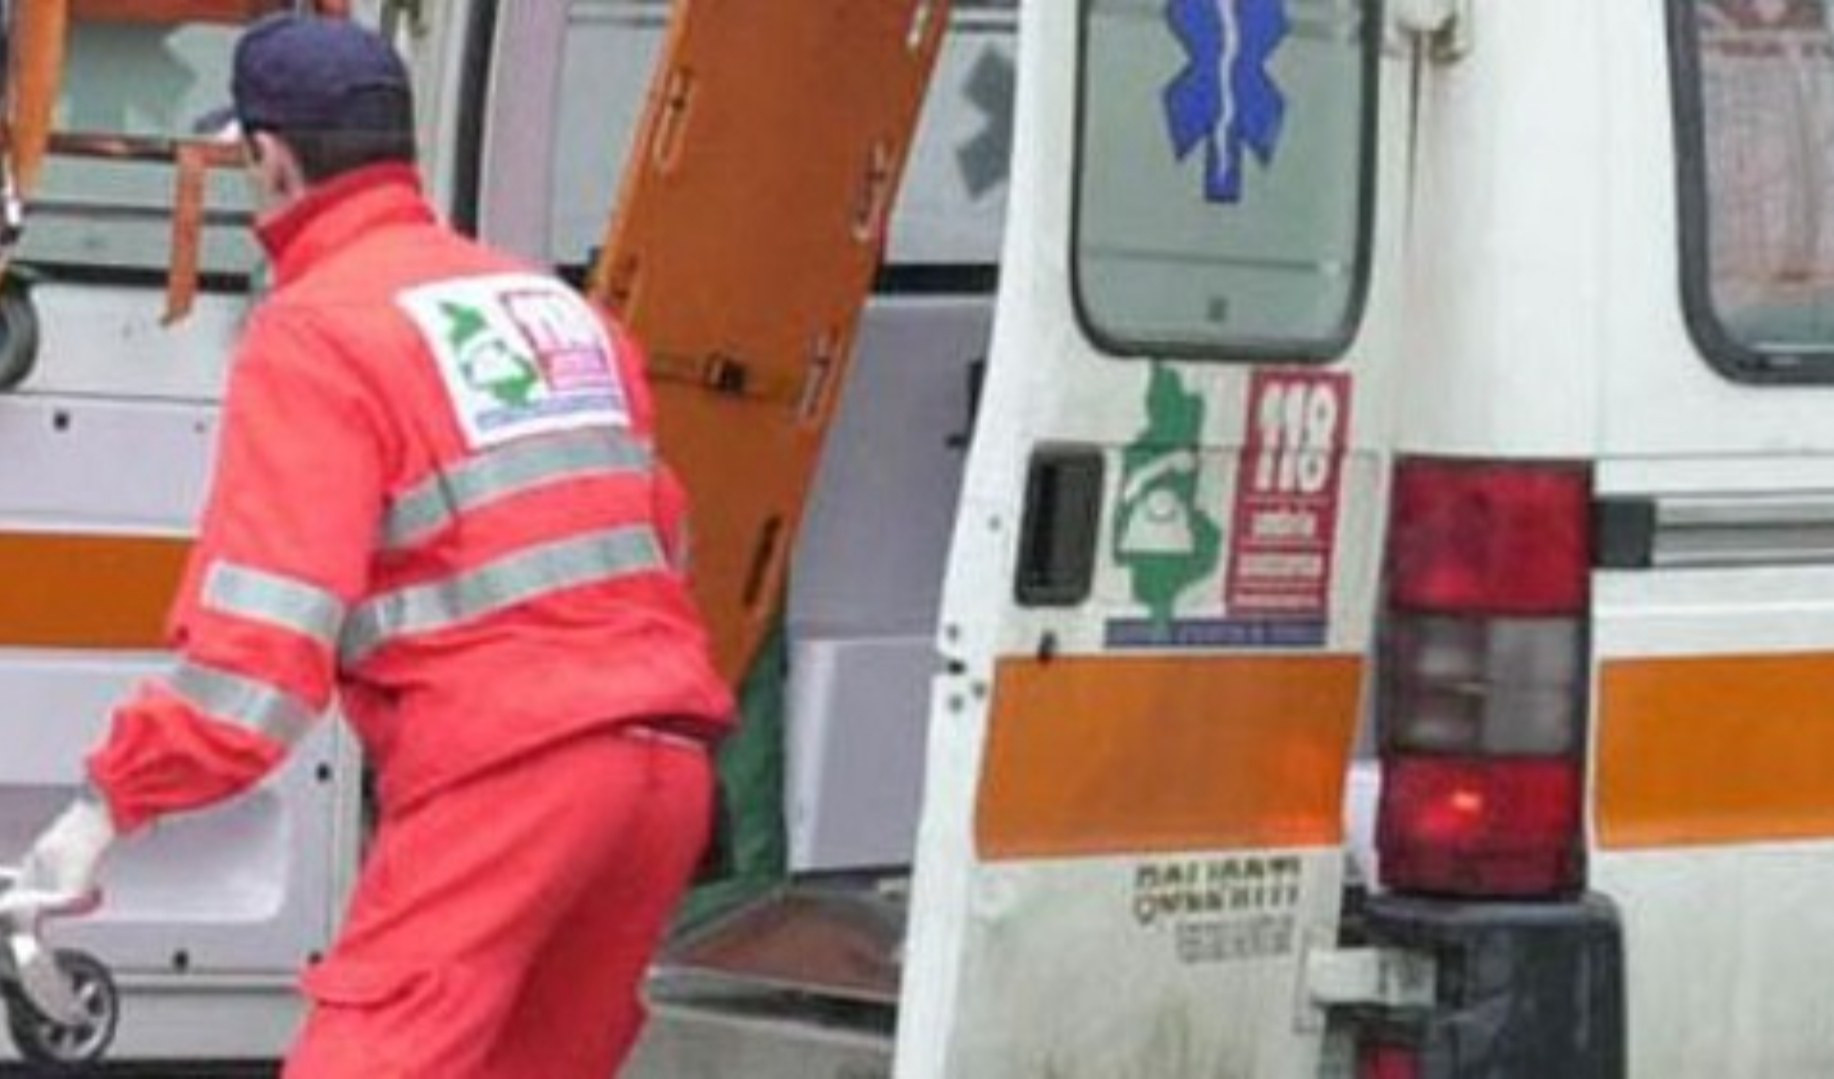 Genova, camionista cade dal tir e sbatte la testa: grave all'ospedale